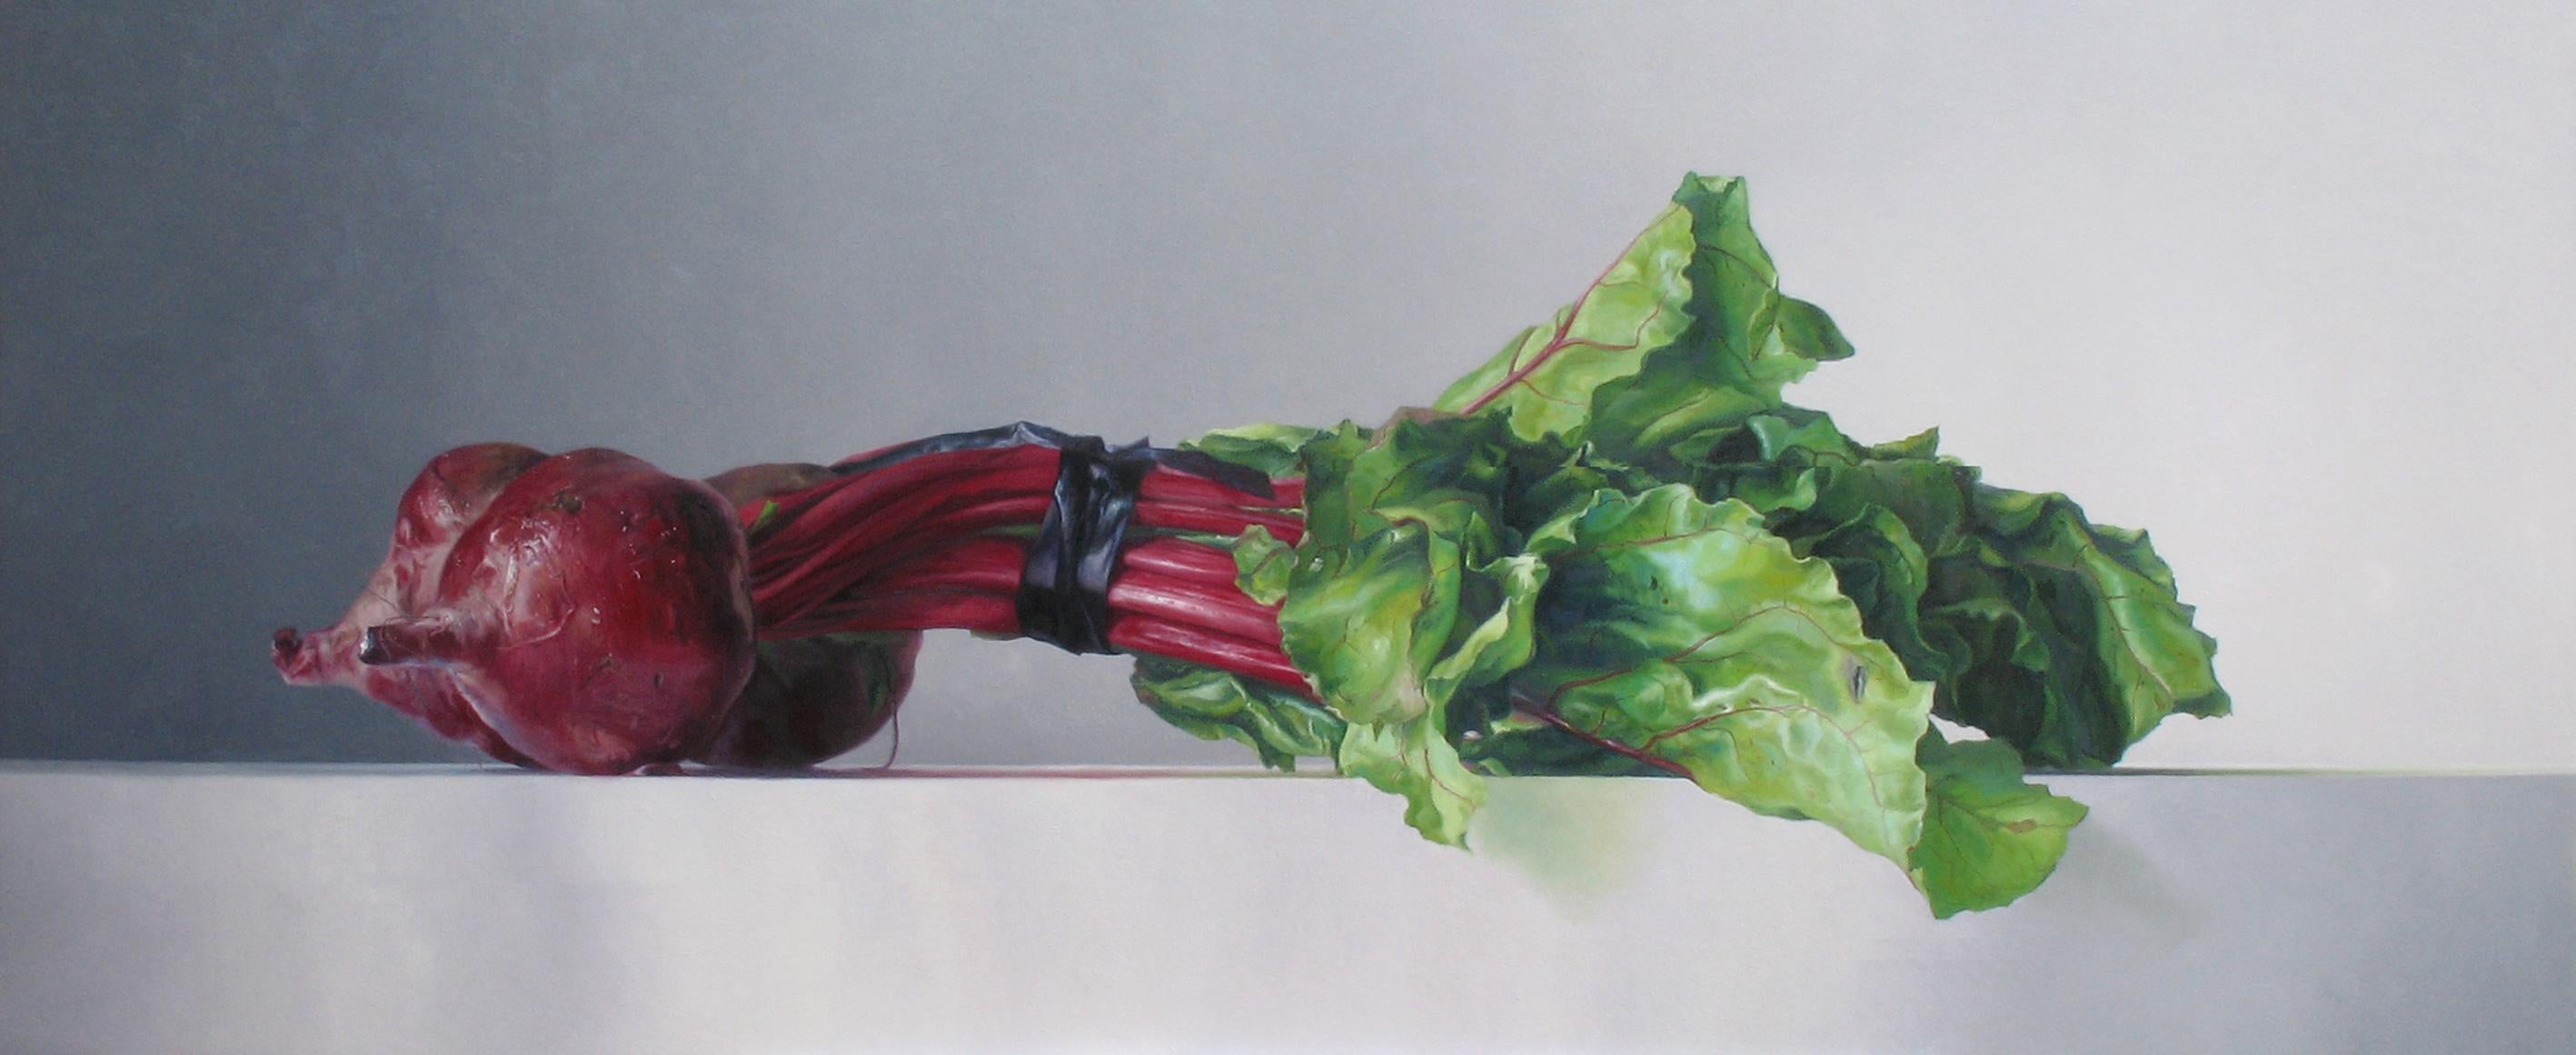 Still-Life Painting Adriana van Zoest - Beets - Nature morte néerlandaise contemporaine du 21e siècle - Légumes